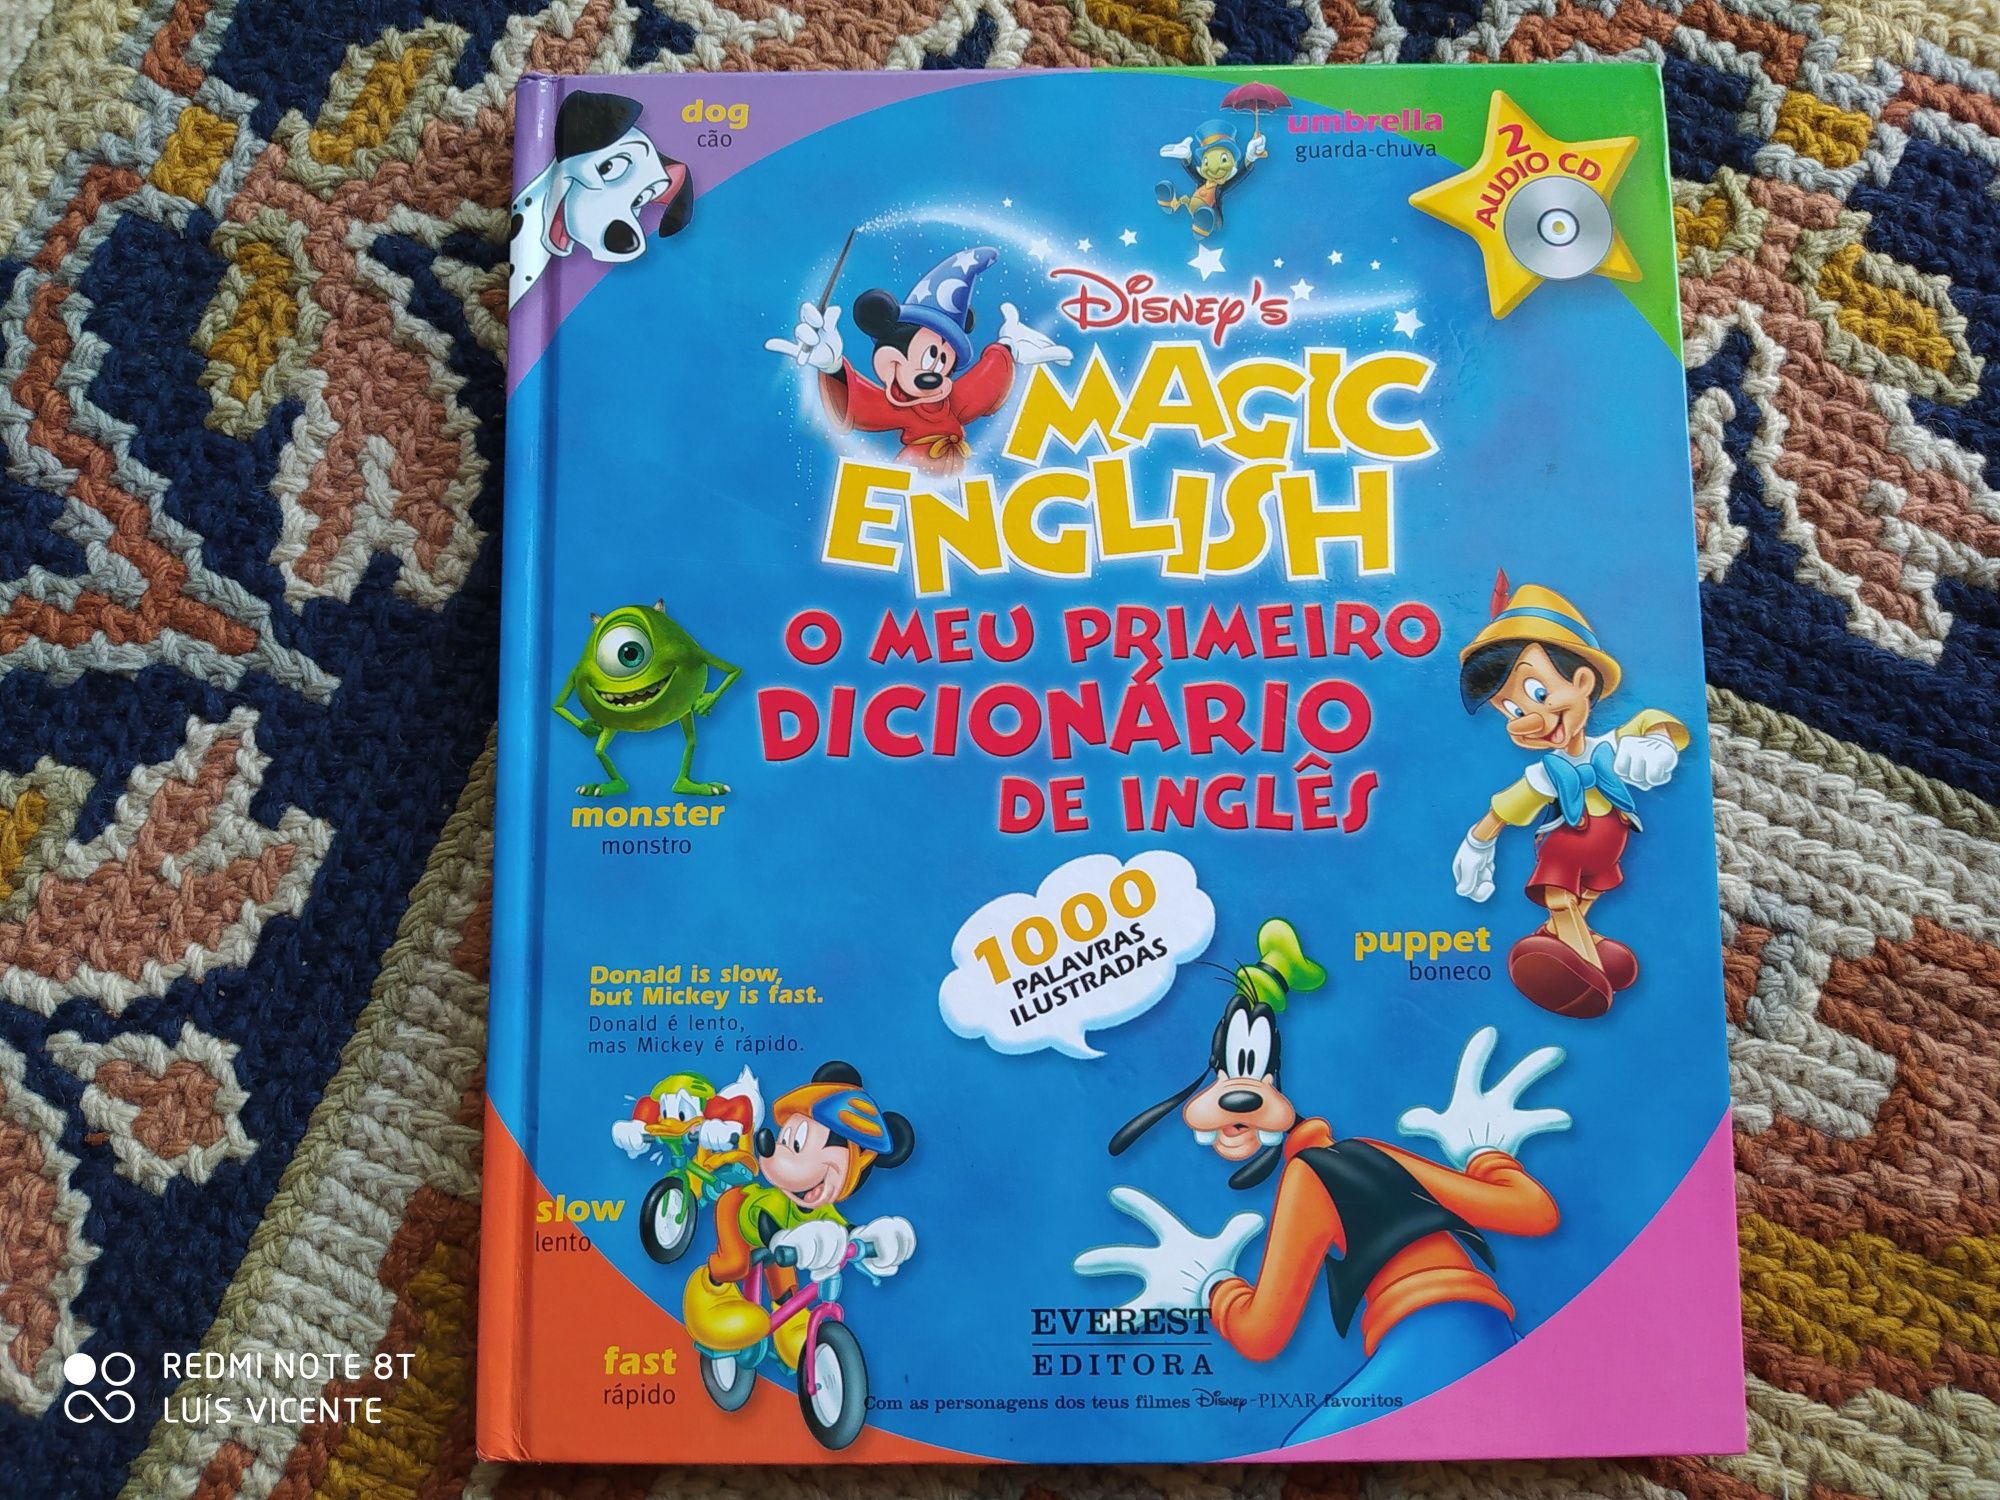 Magic English